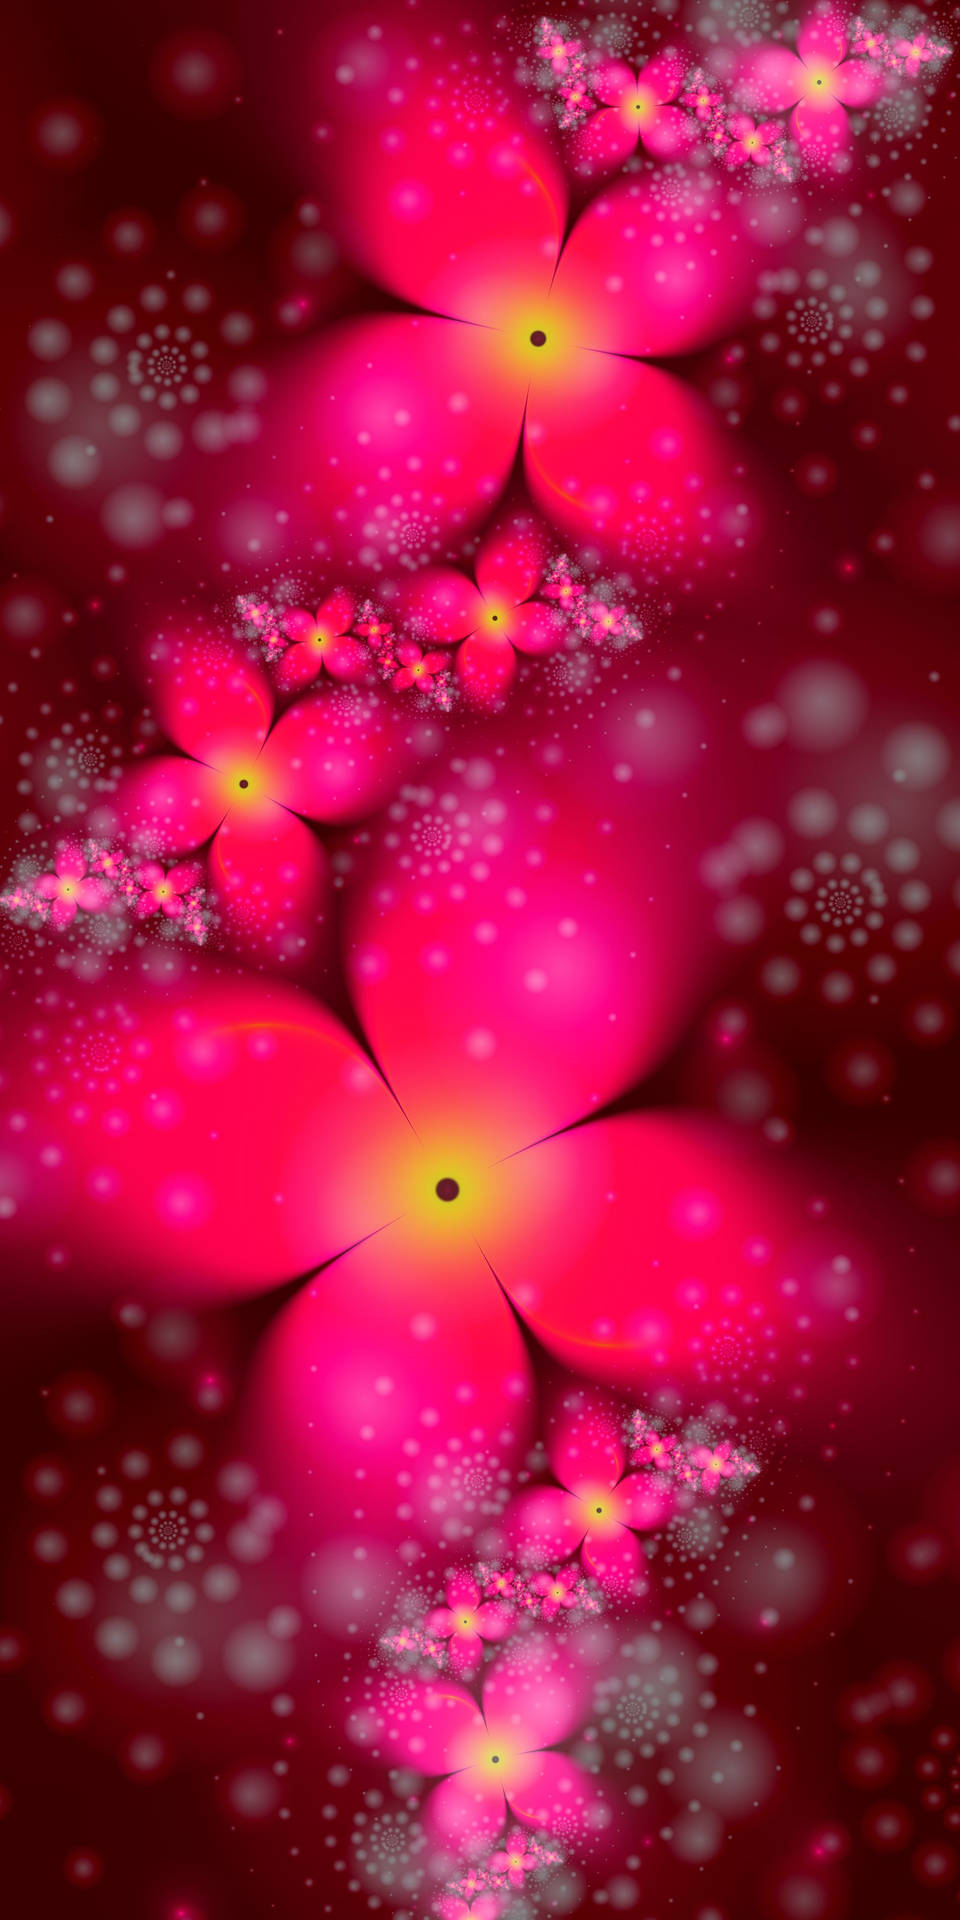 Impresionantesflores Rosas En 3d Para Iphone. Fondo de pantalla